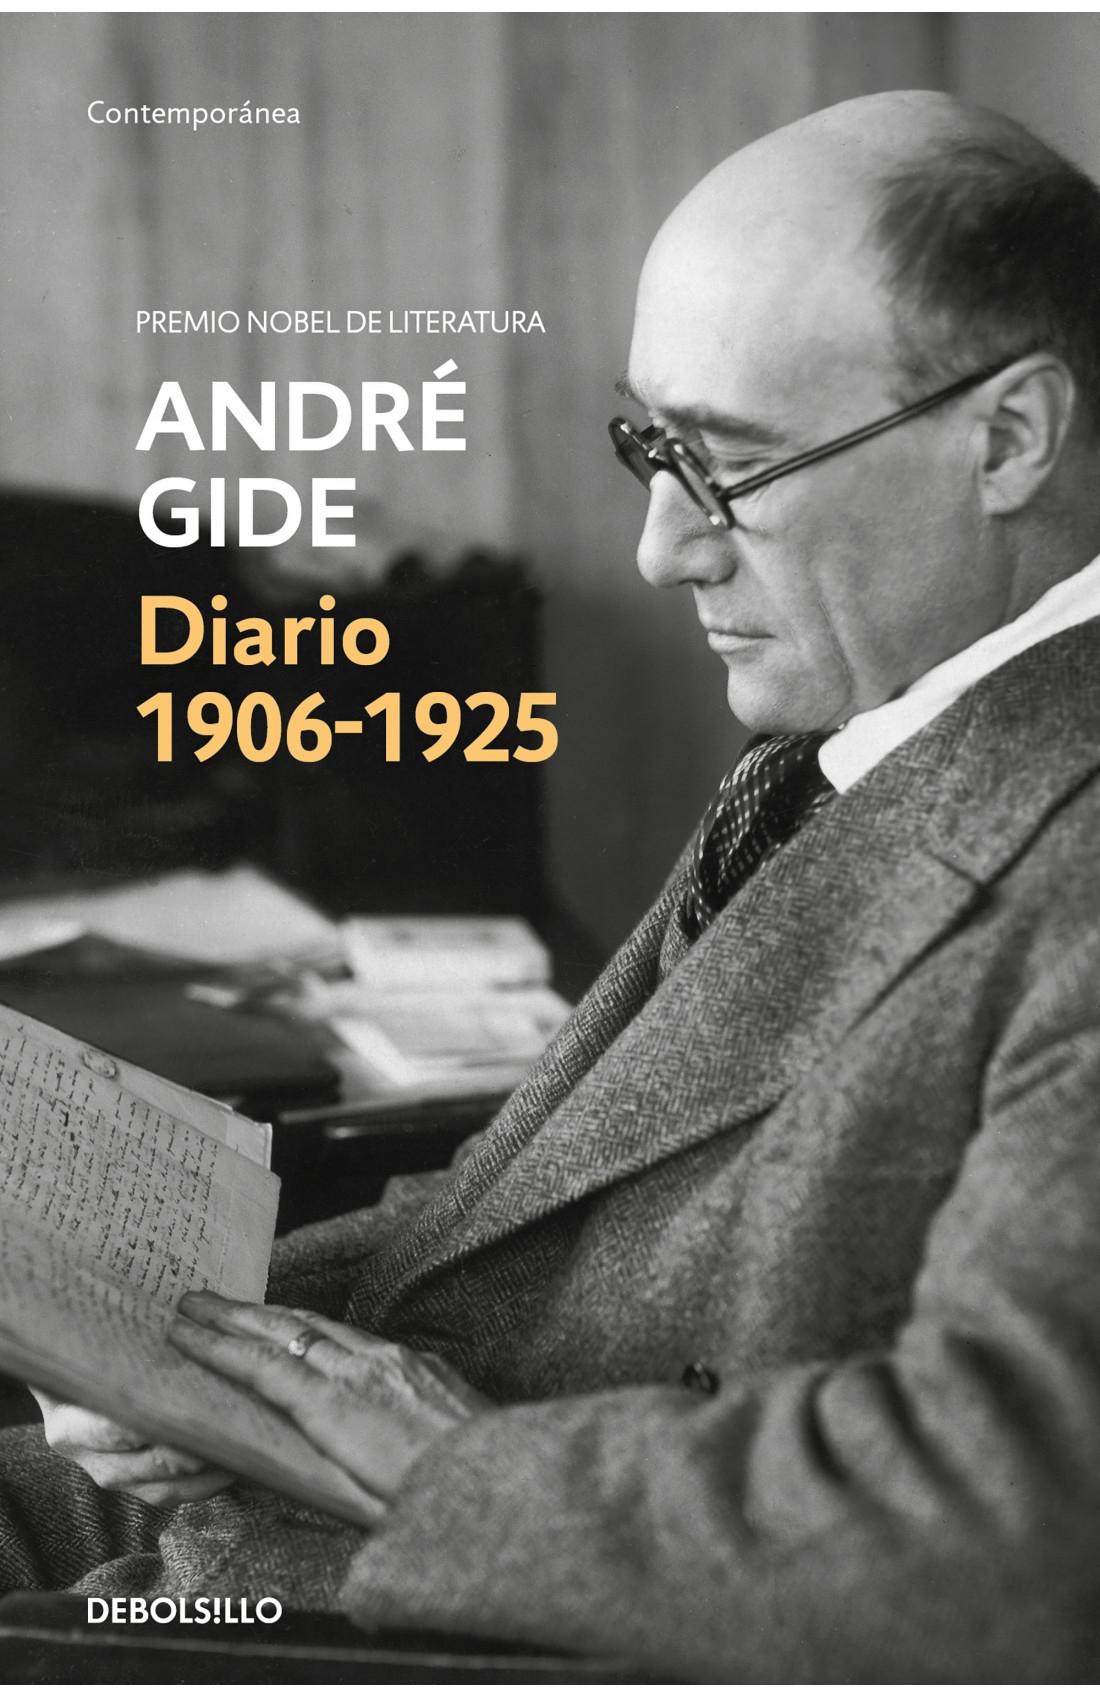 Diario 2  André Gide (1906-1925)